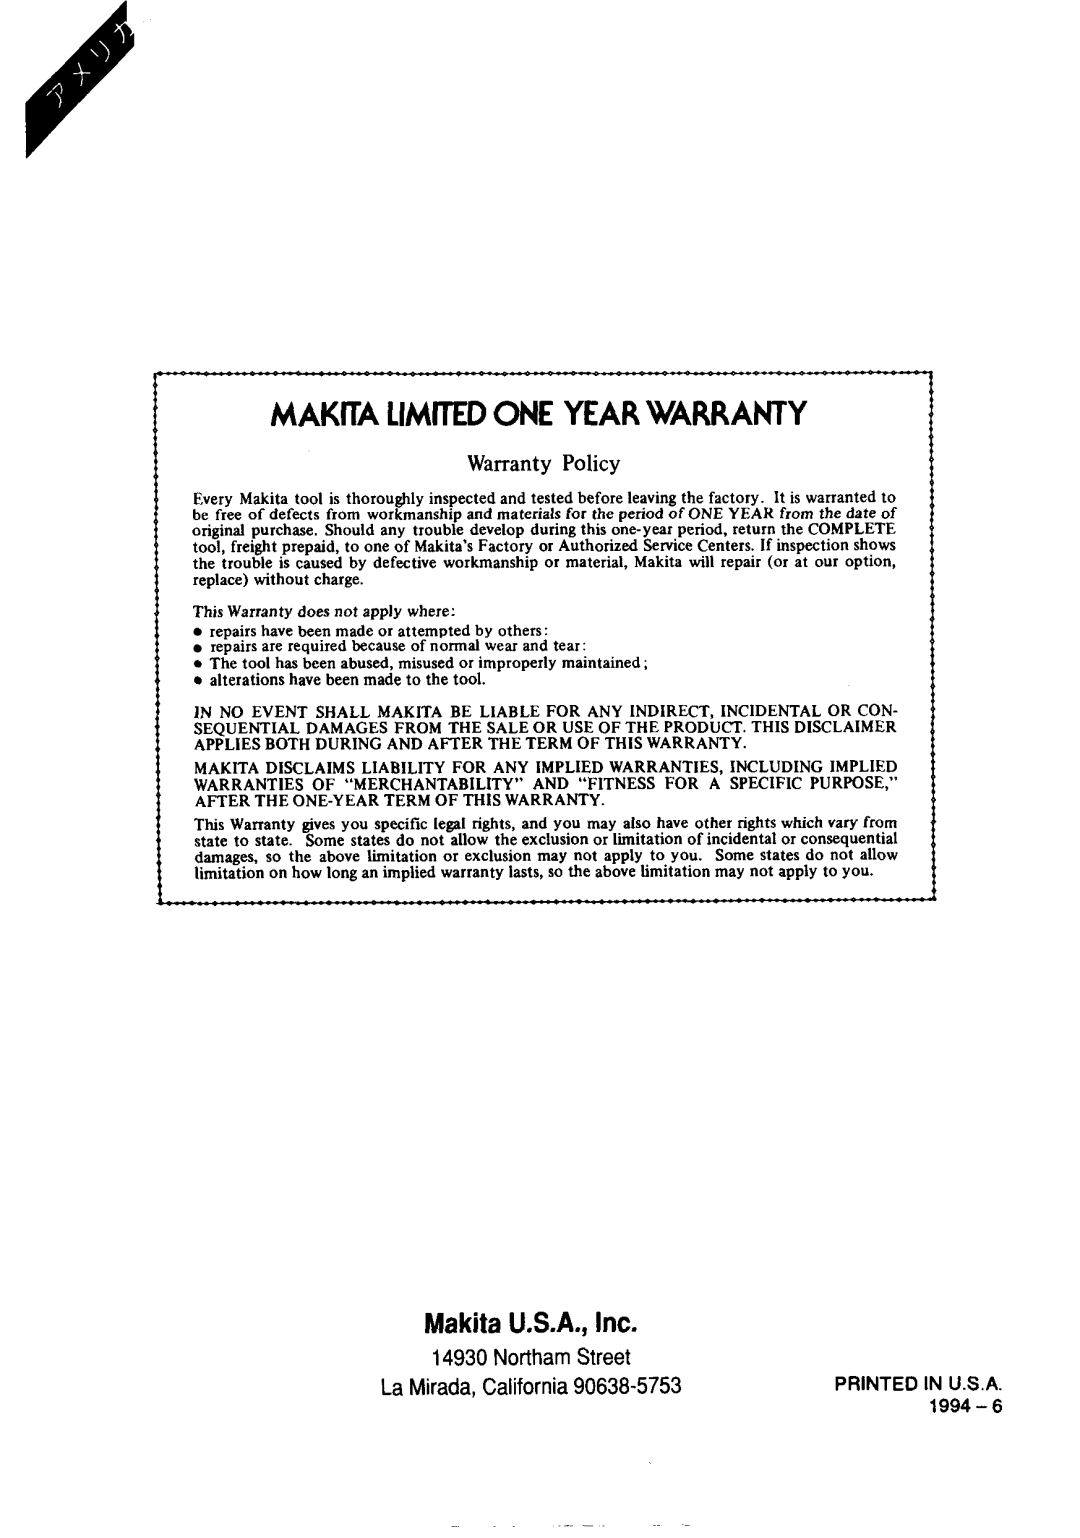 Makita 8402VDW instruction manual Makita Limited One Year Warranty, Makita U.S.A., Inc, Warranty Policy 